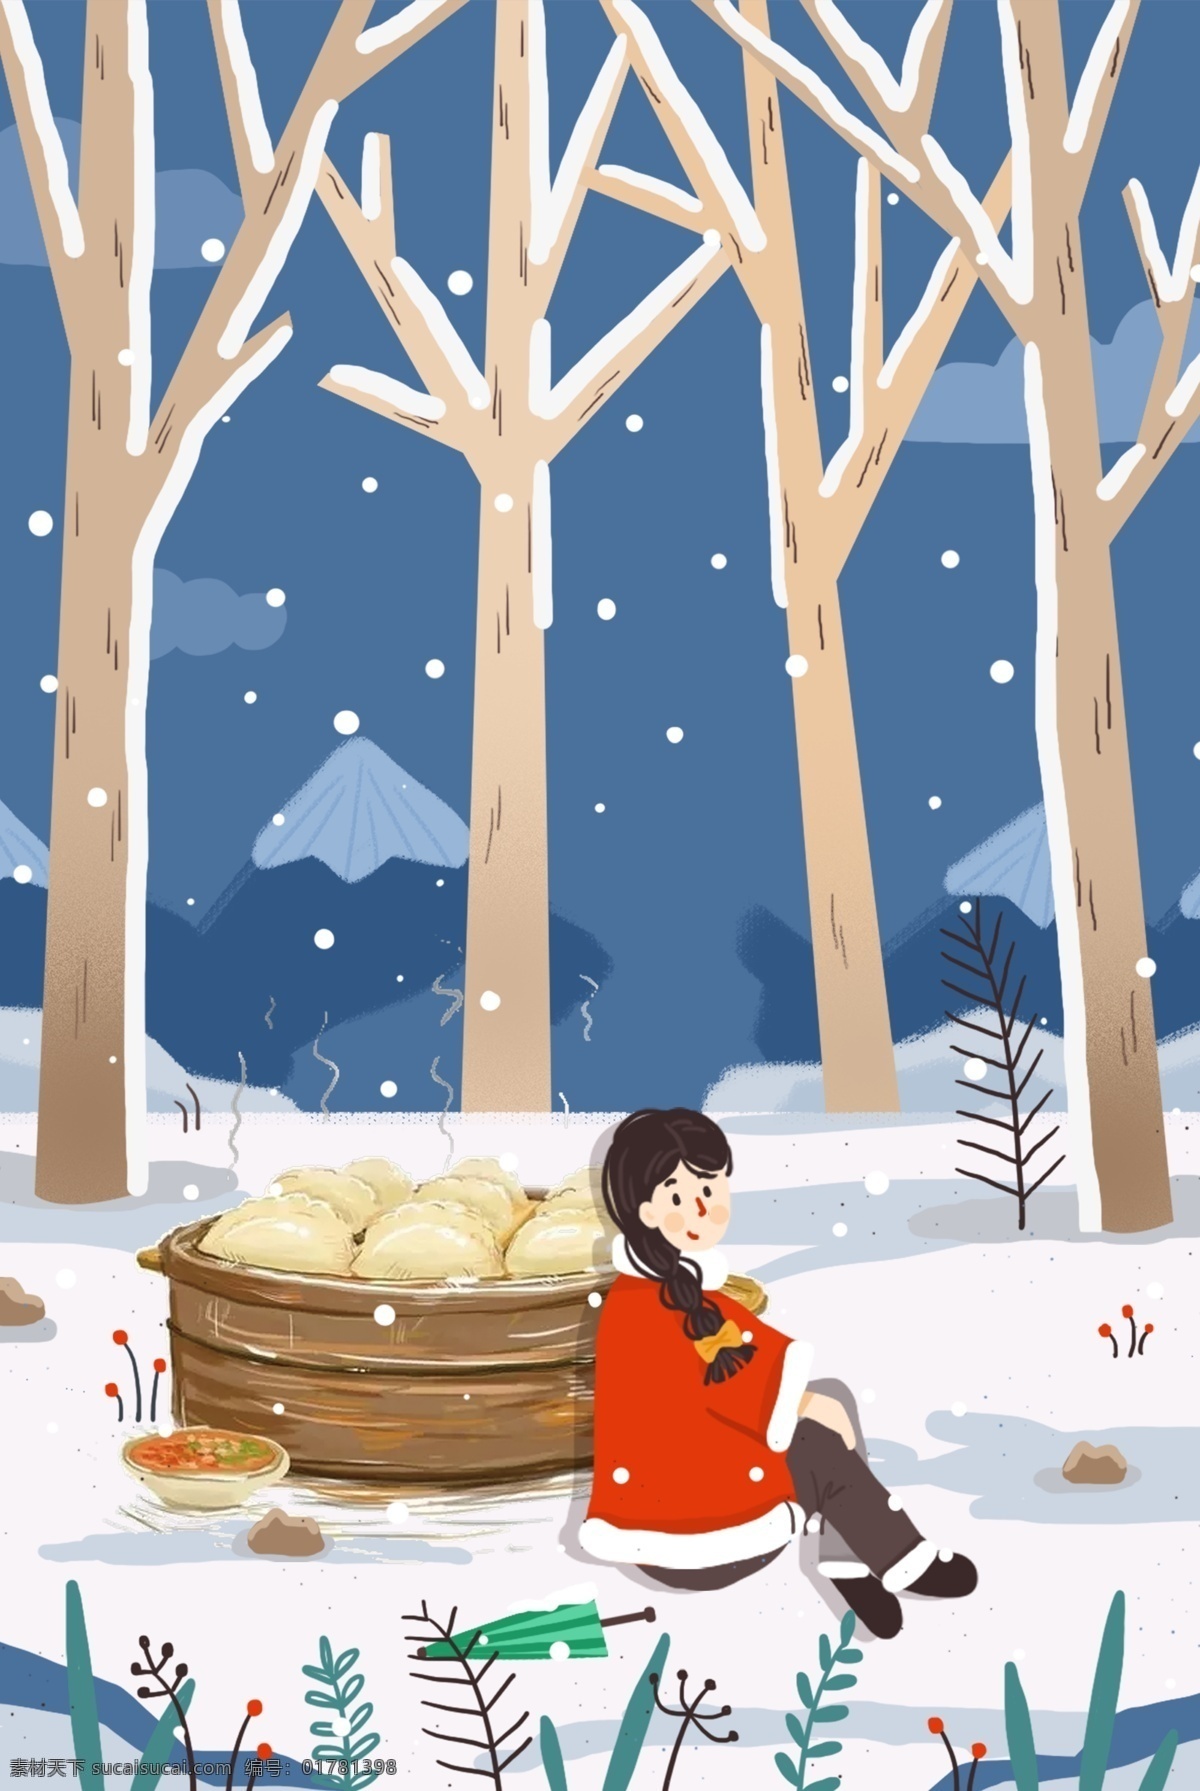 冬至节气 饺子背景图 冬至 树木 人物 饺子 插画 卡通 雪 朴素 开心